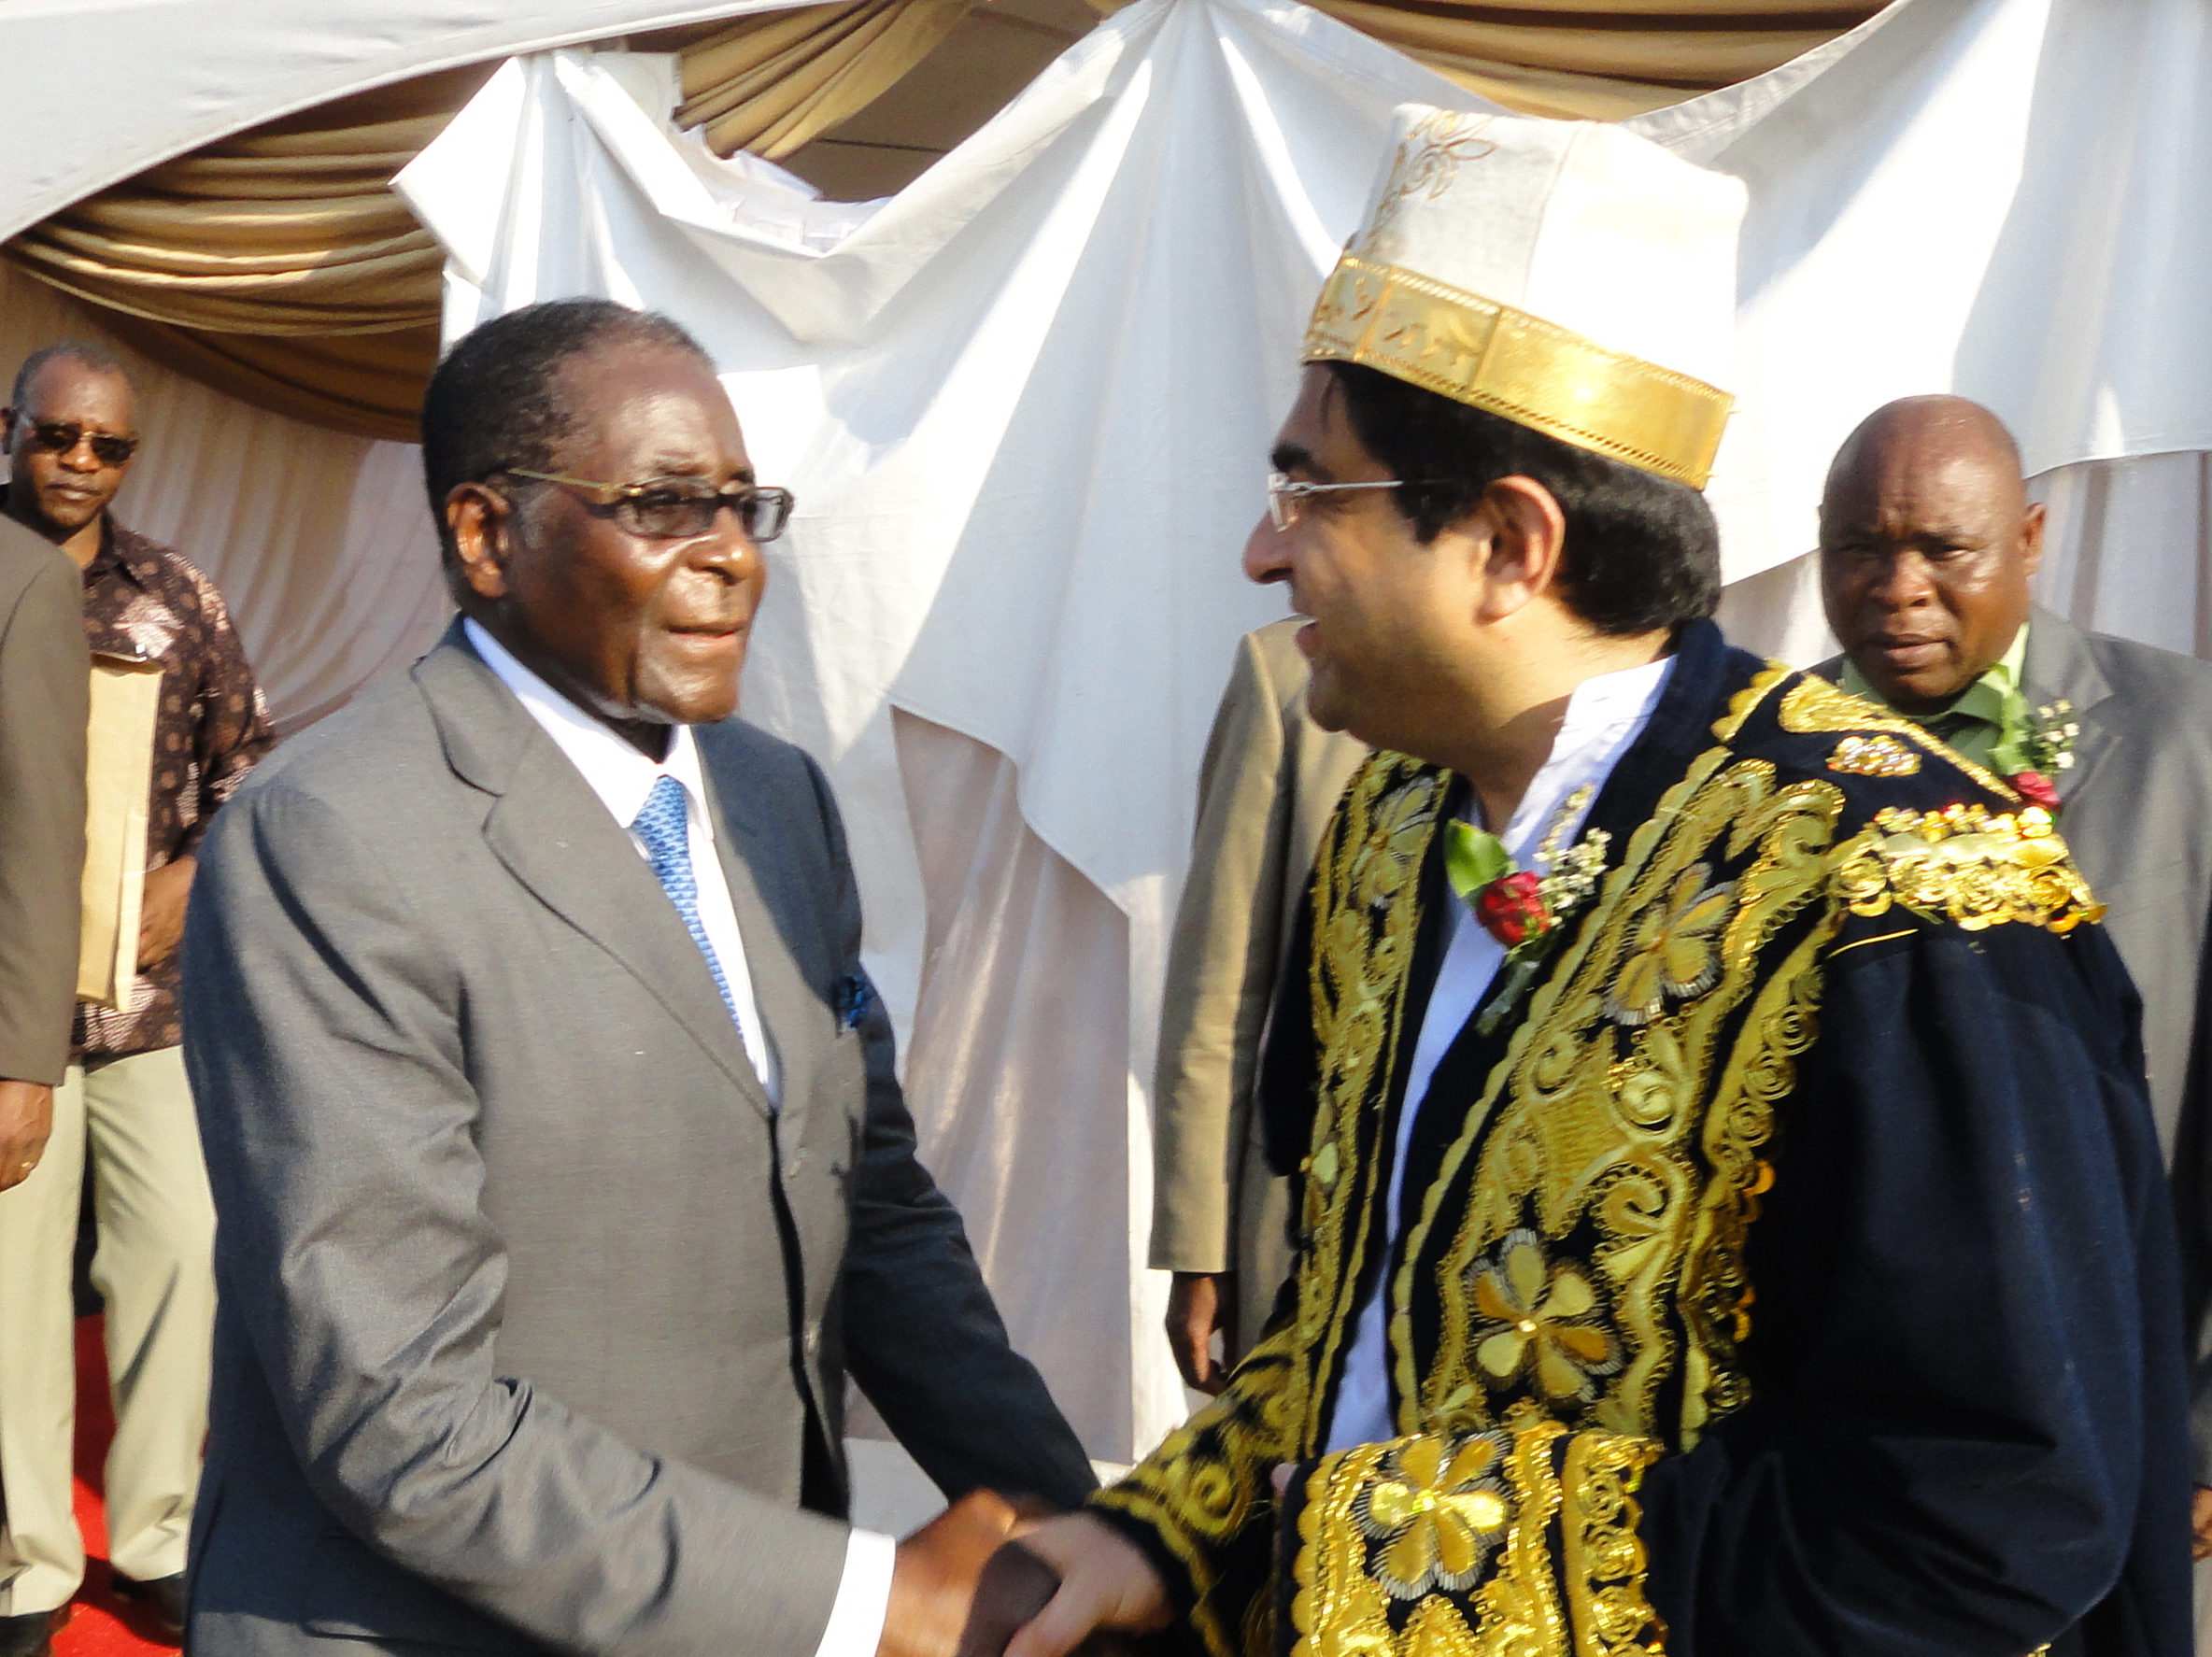 Kamlesh Pattni shaking the hand of Robert Mugabe